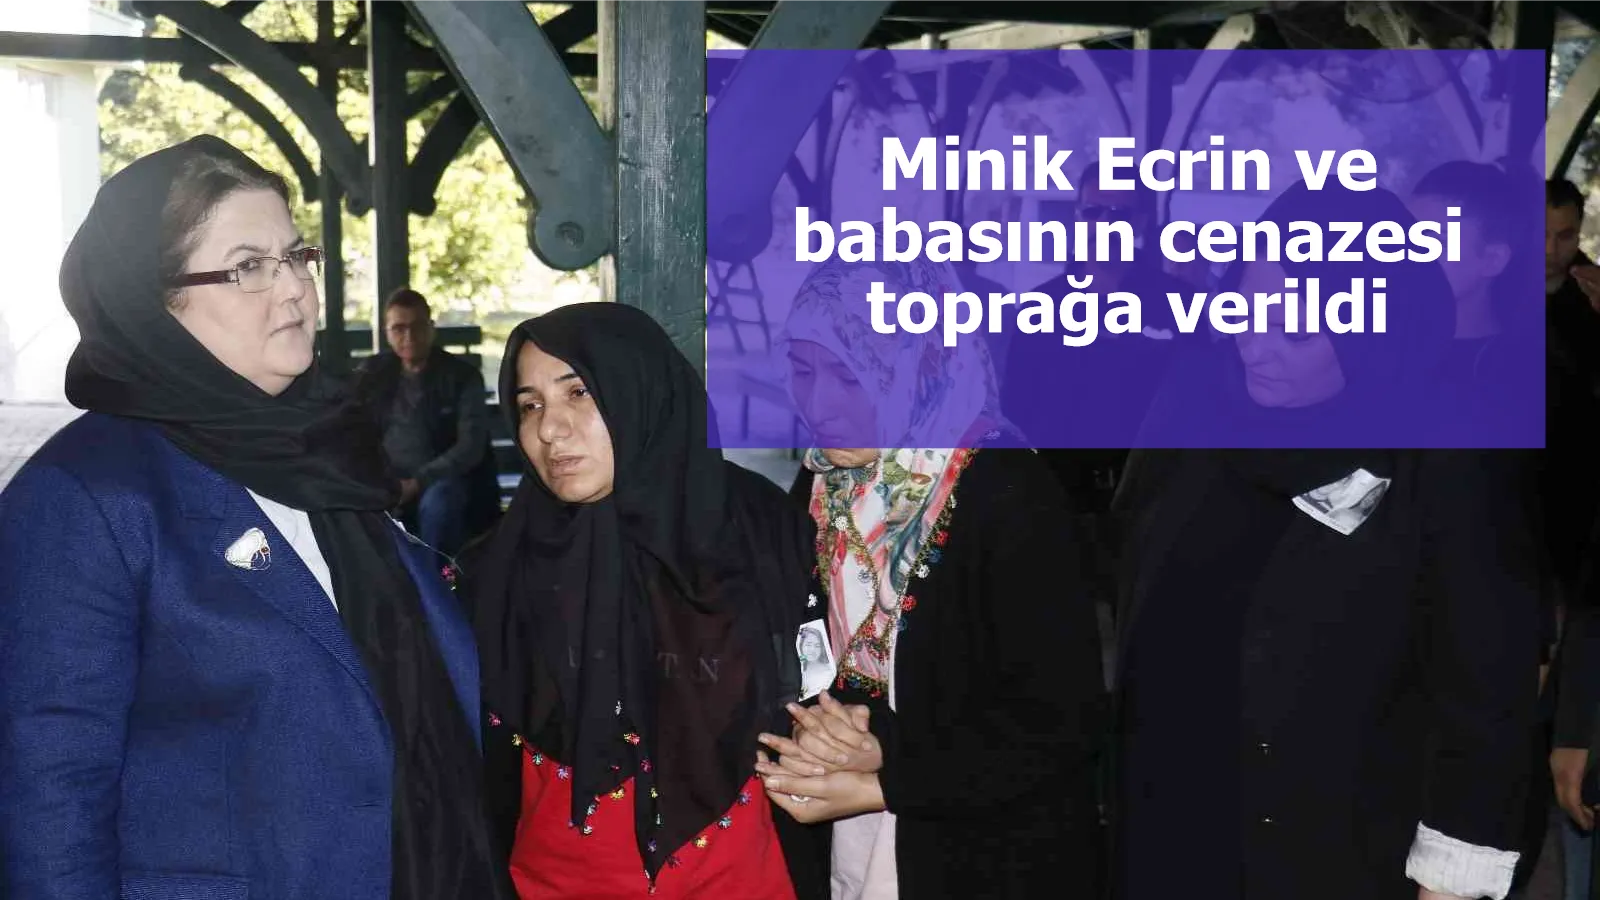 Minik Ecrin ve babasının cenazesi toprağa verildi